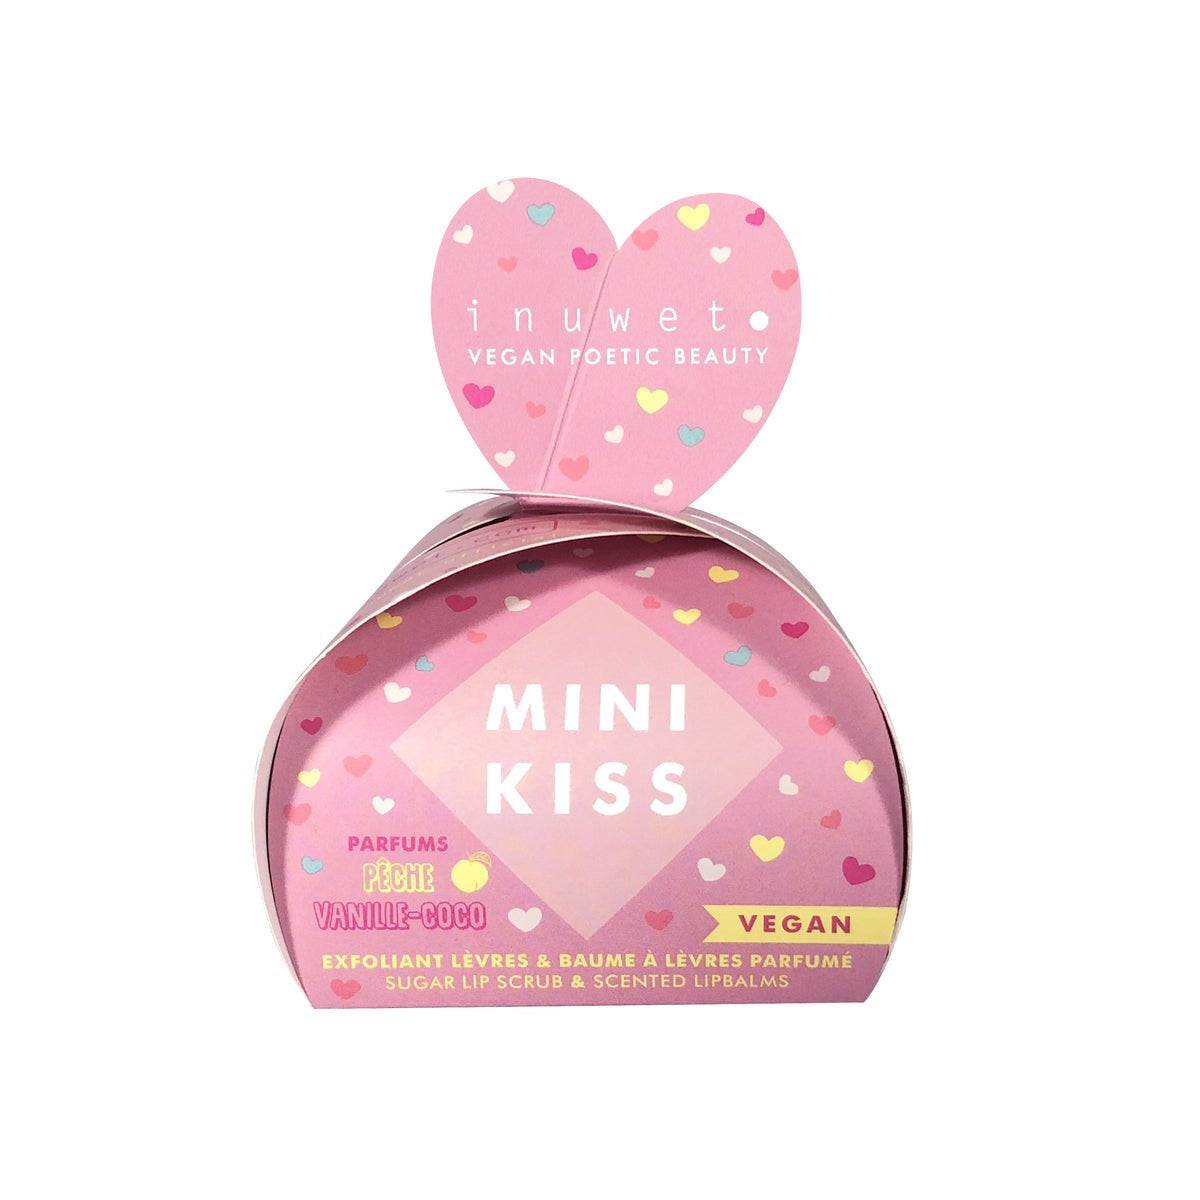 INUWET Mini Kiss Gift Set - Peach Lip scrub & Coco Vanilla Lip Balm